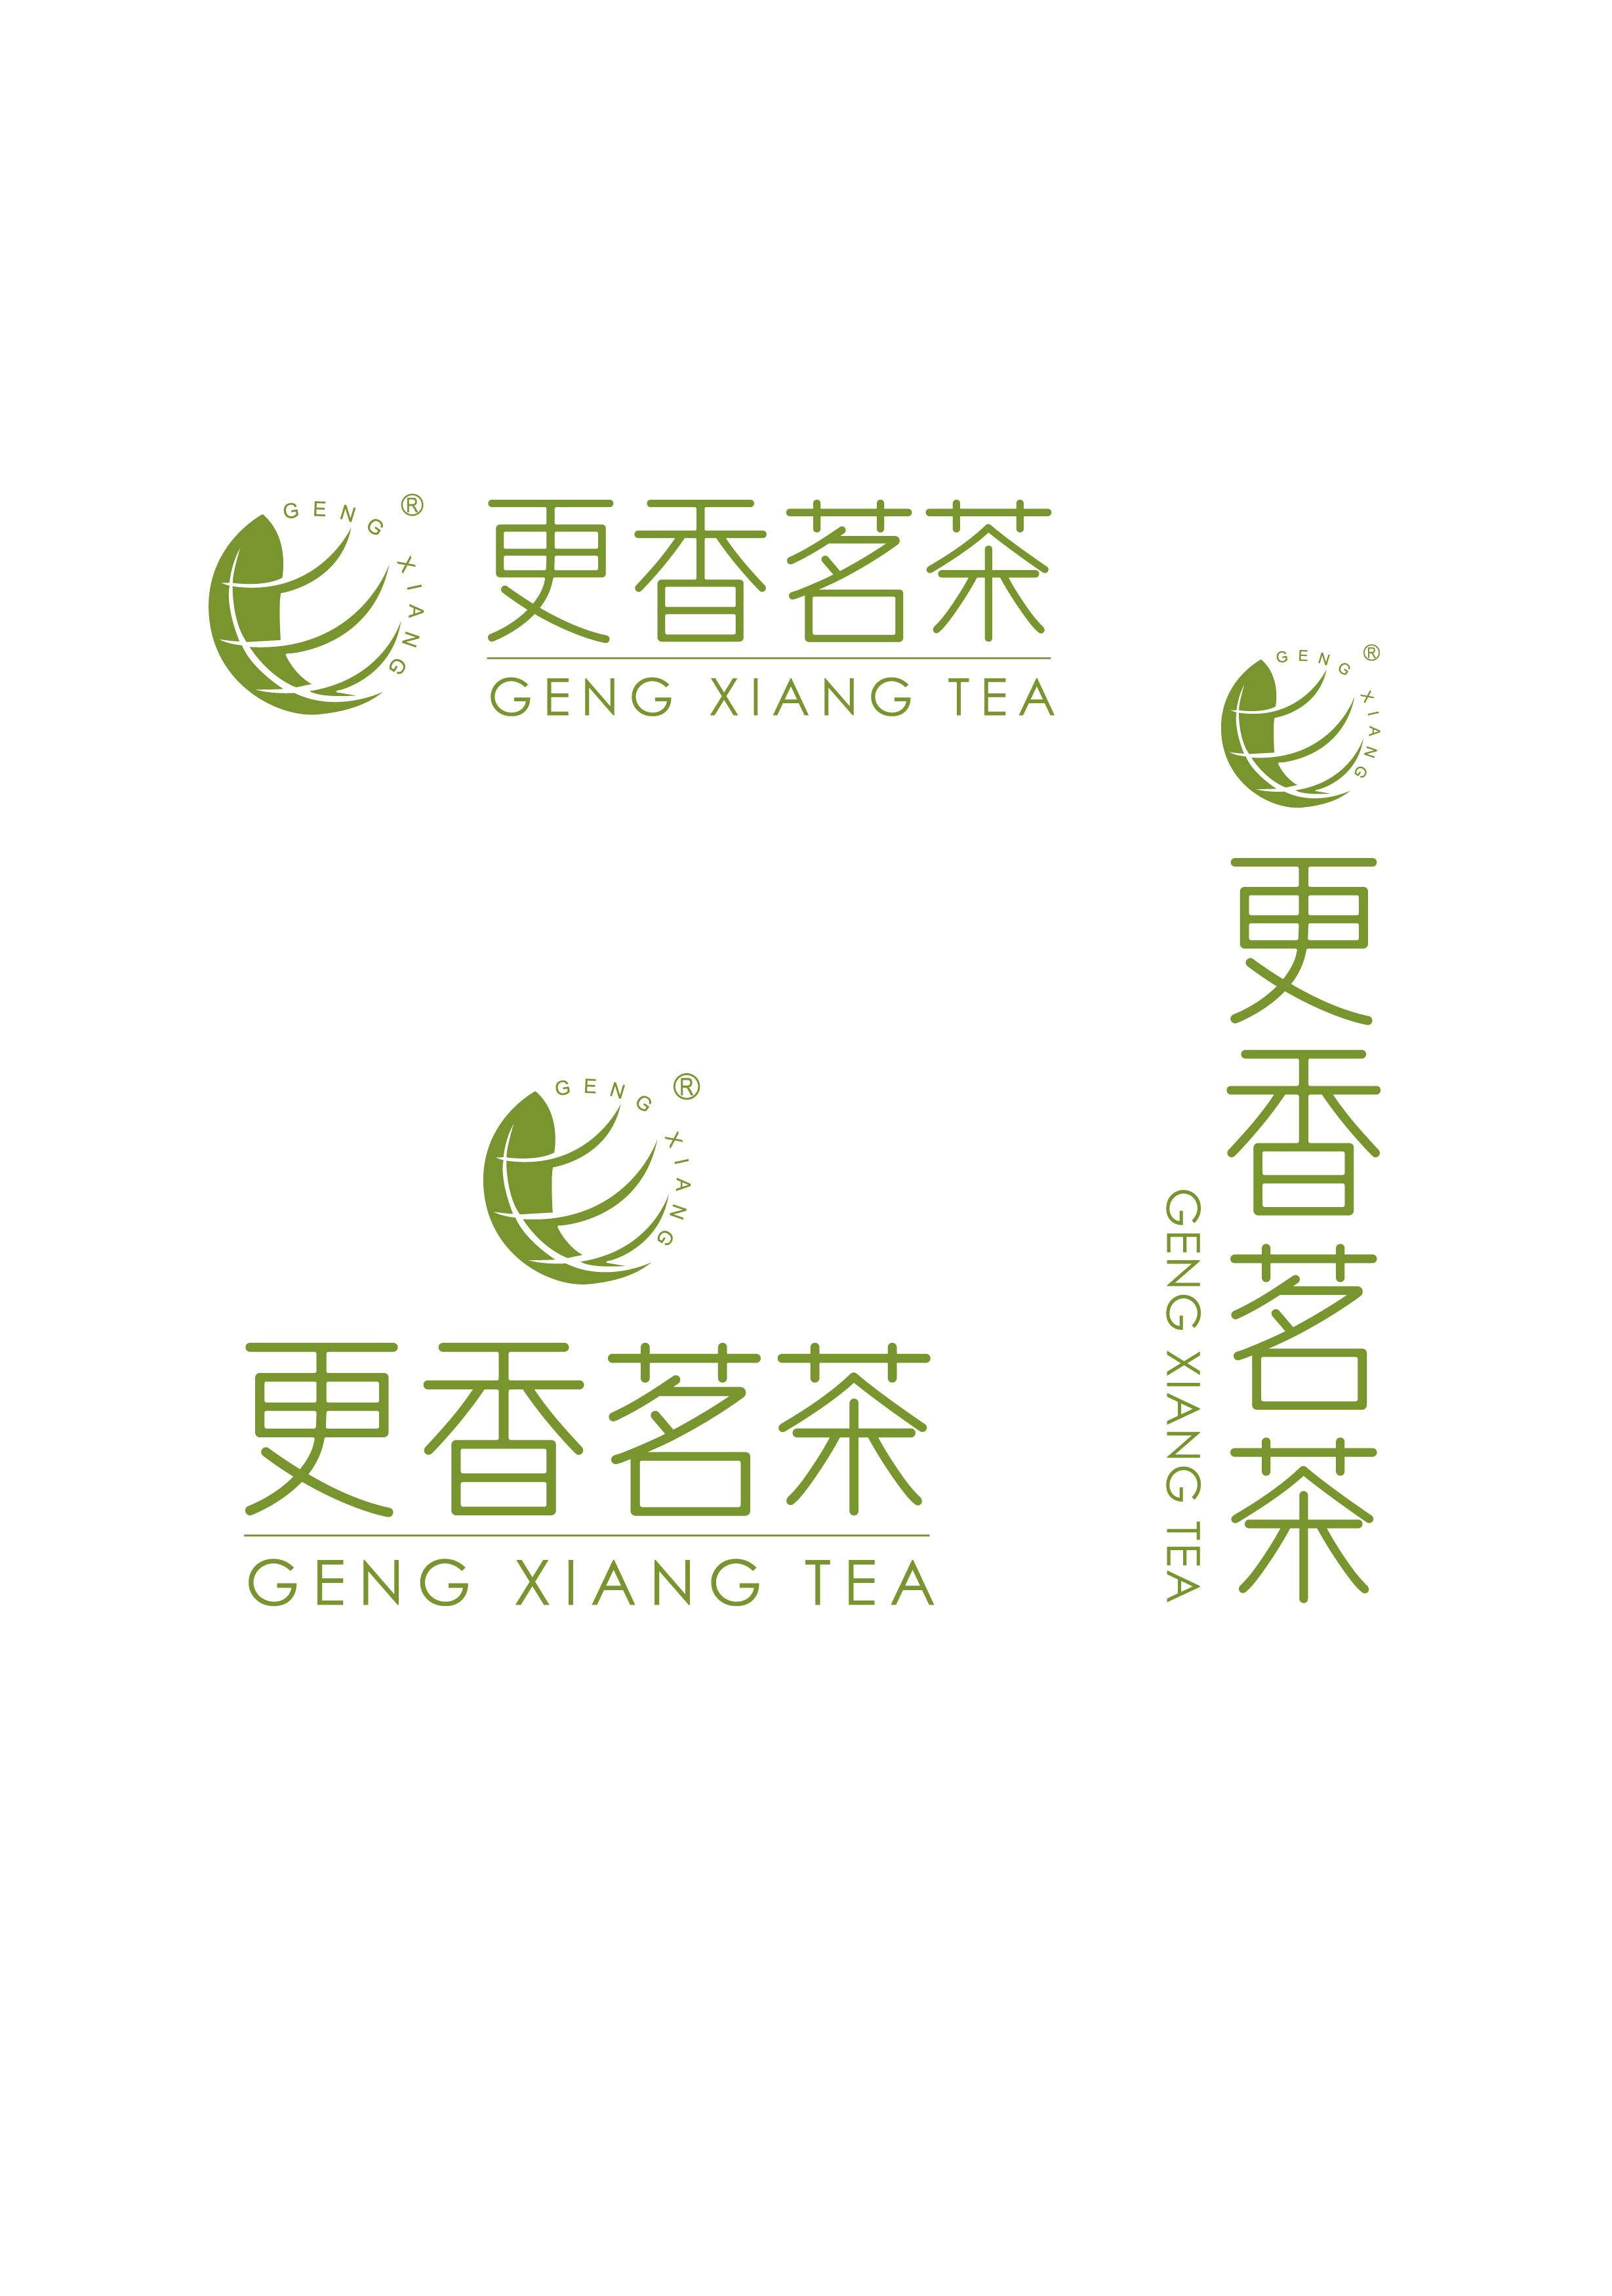 Zhejiang Gengxiang Organic Tea Development Co., Ltd.